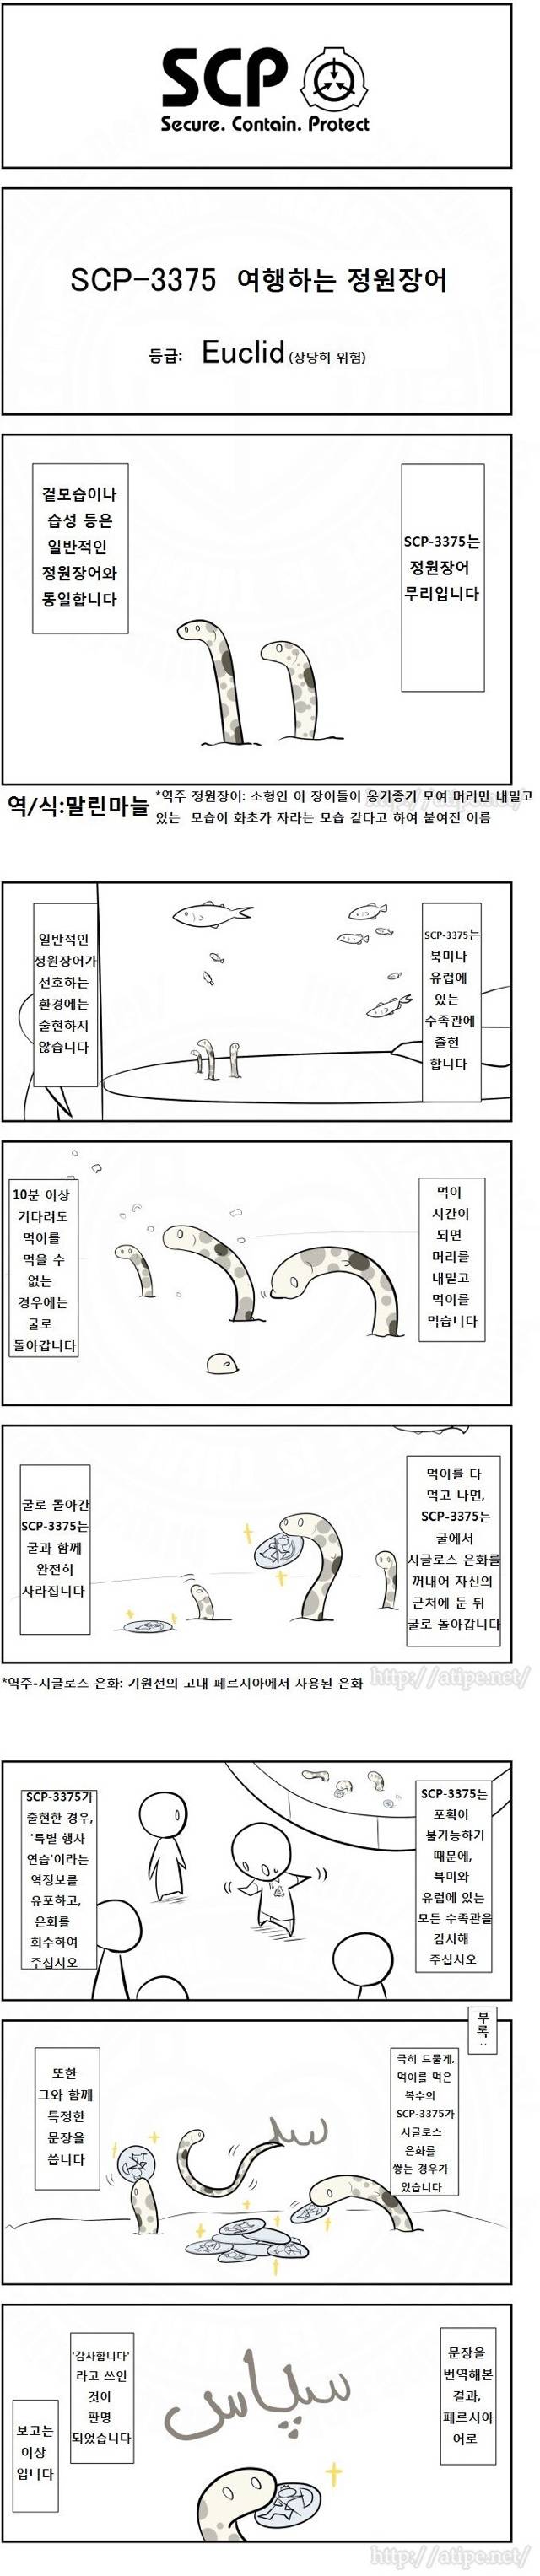 미스터리) SCP 소개 만화 91화~100화 | 인스티즈